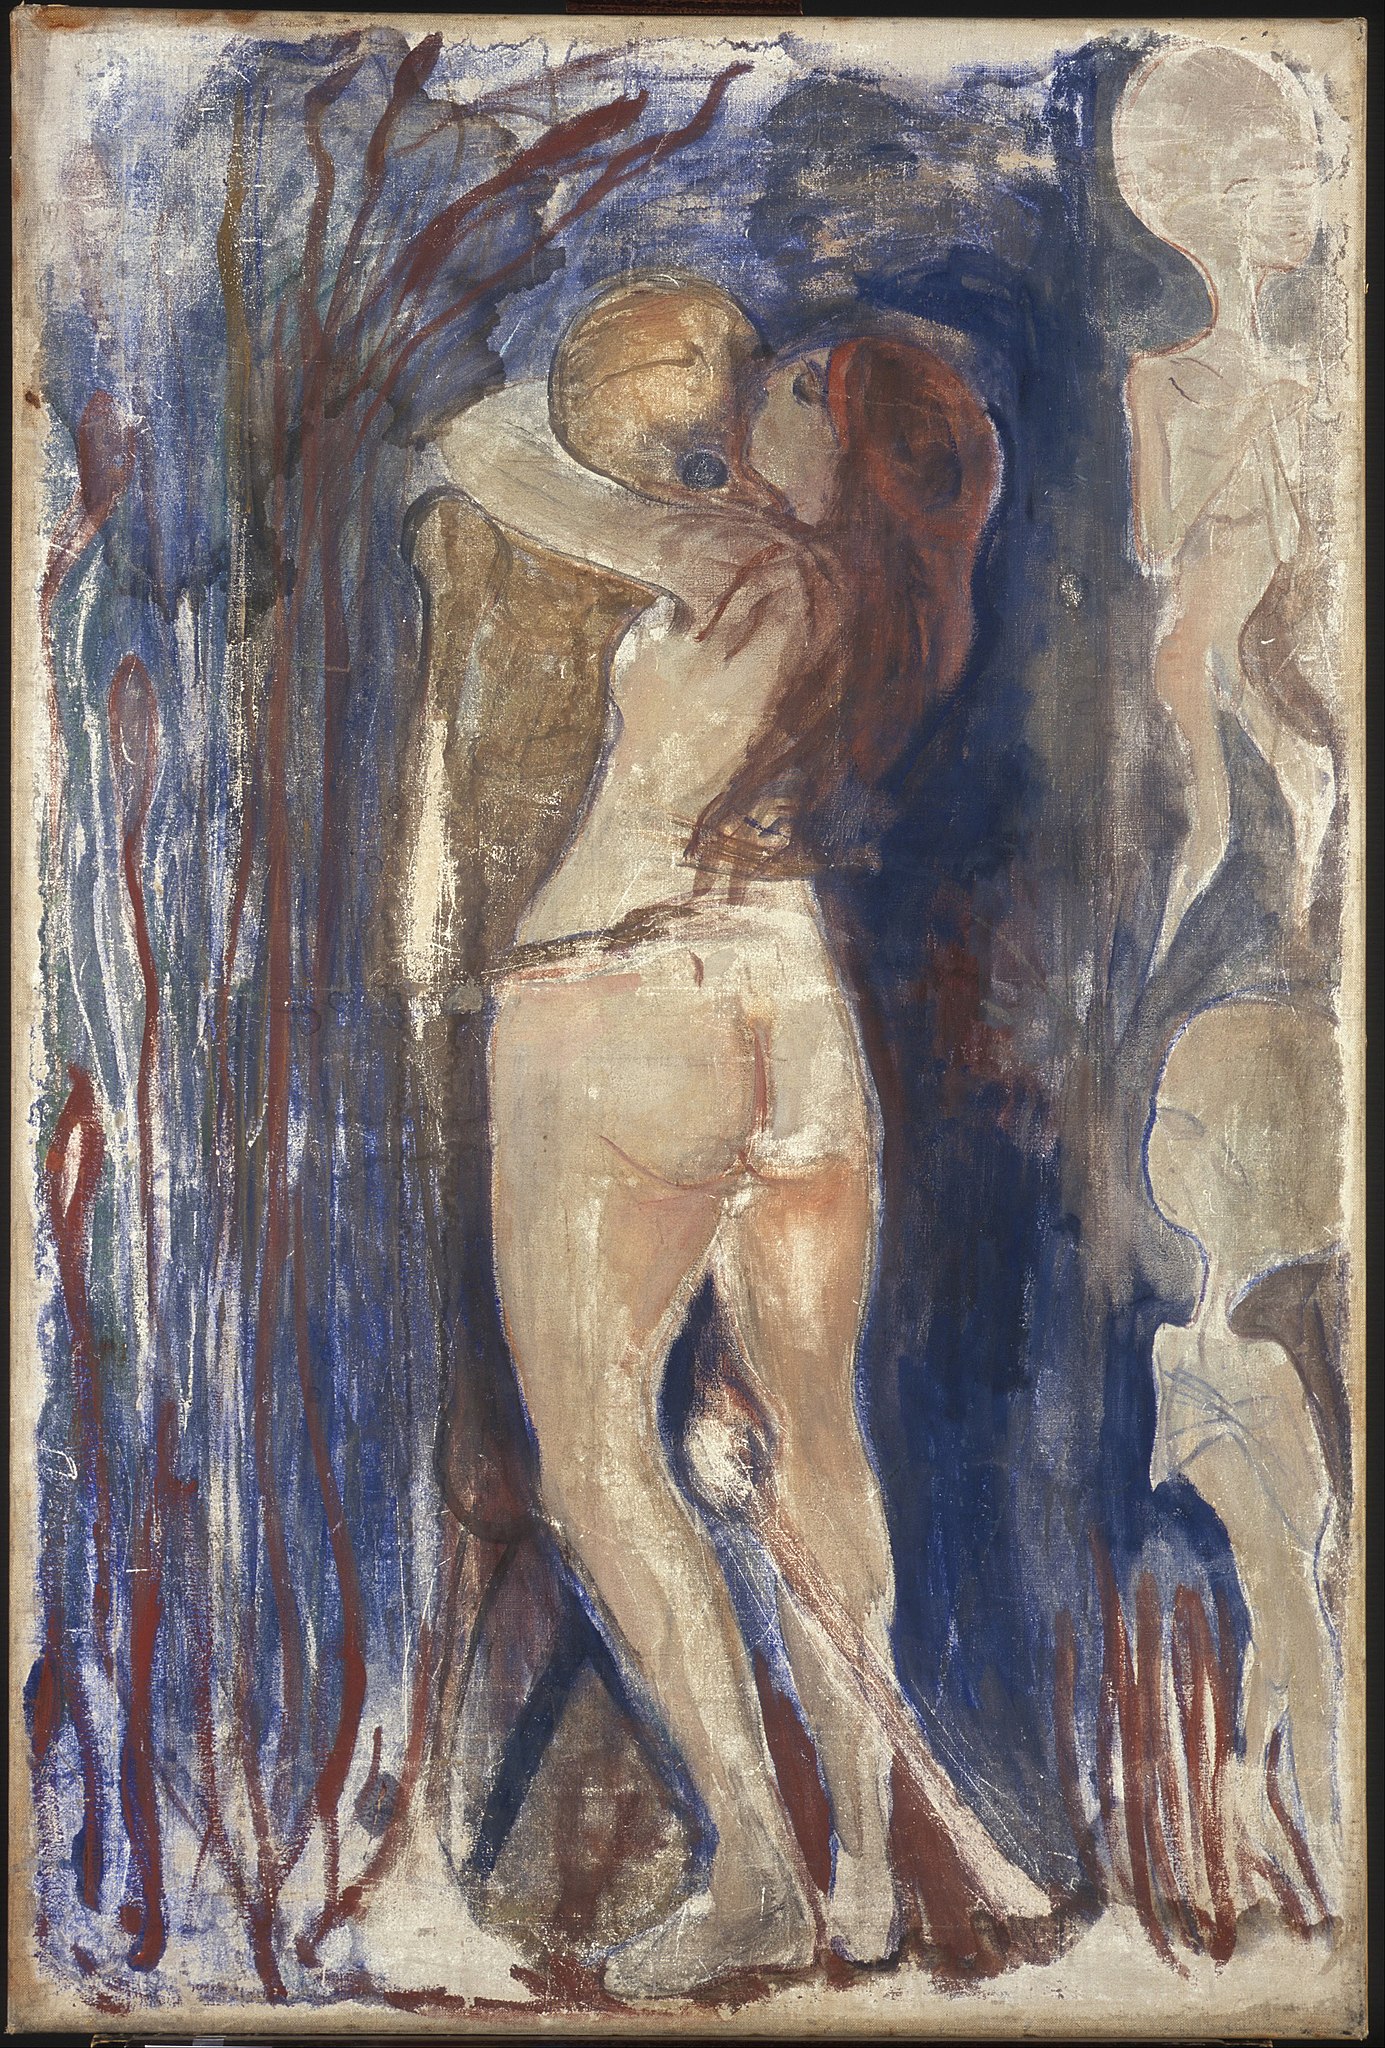 死亡和生命 by Edvard Munch - 1894 - 86 x 128 cm 